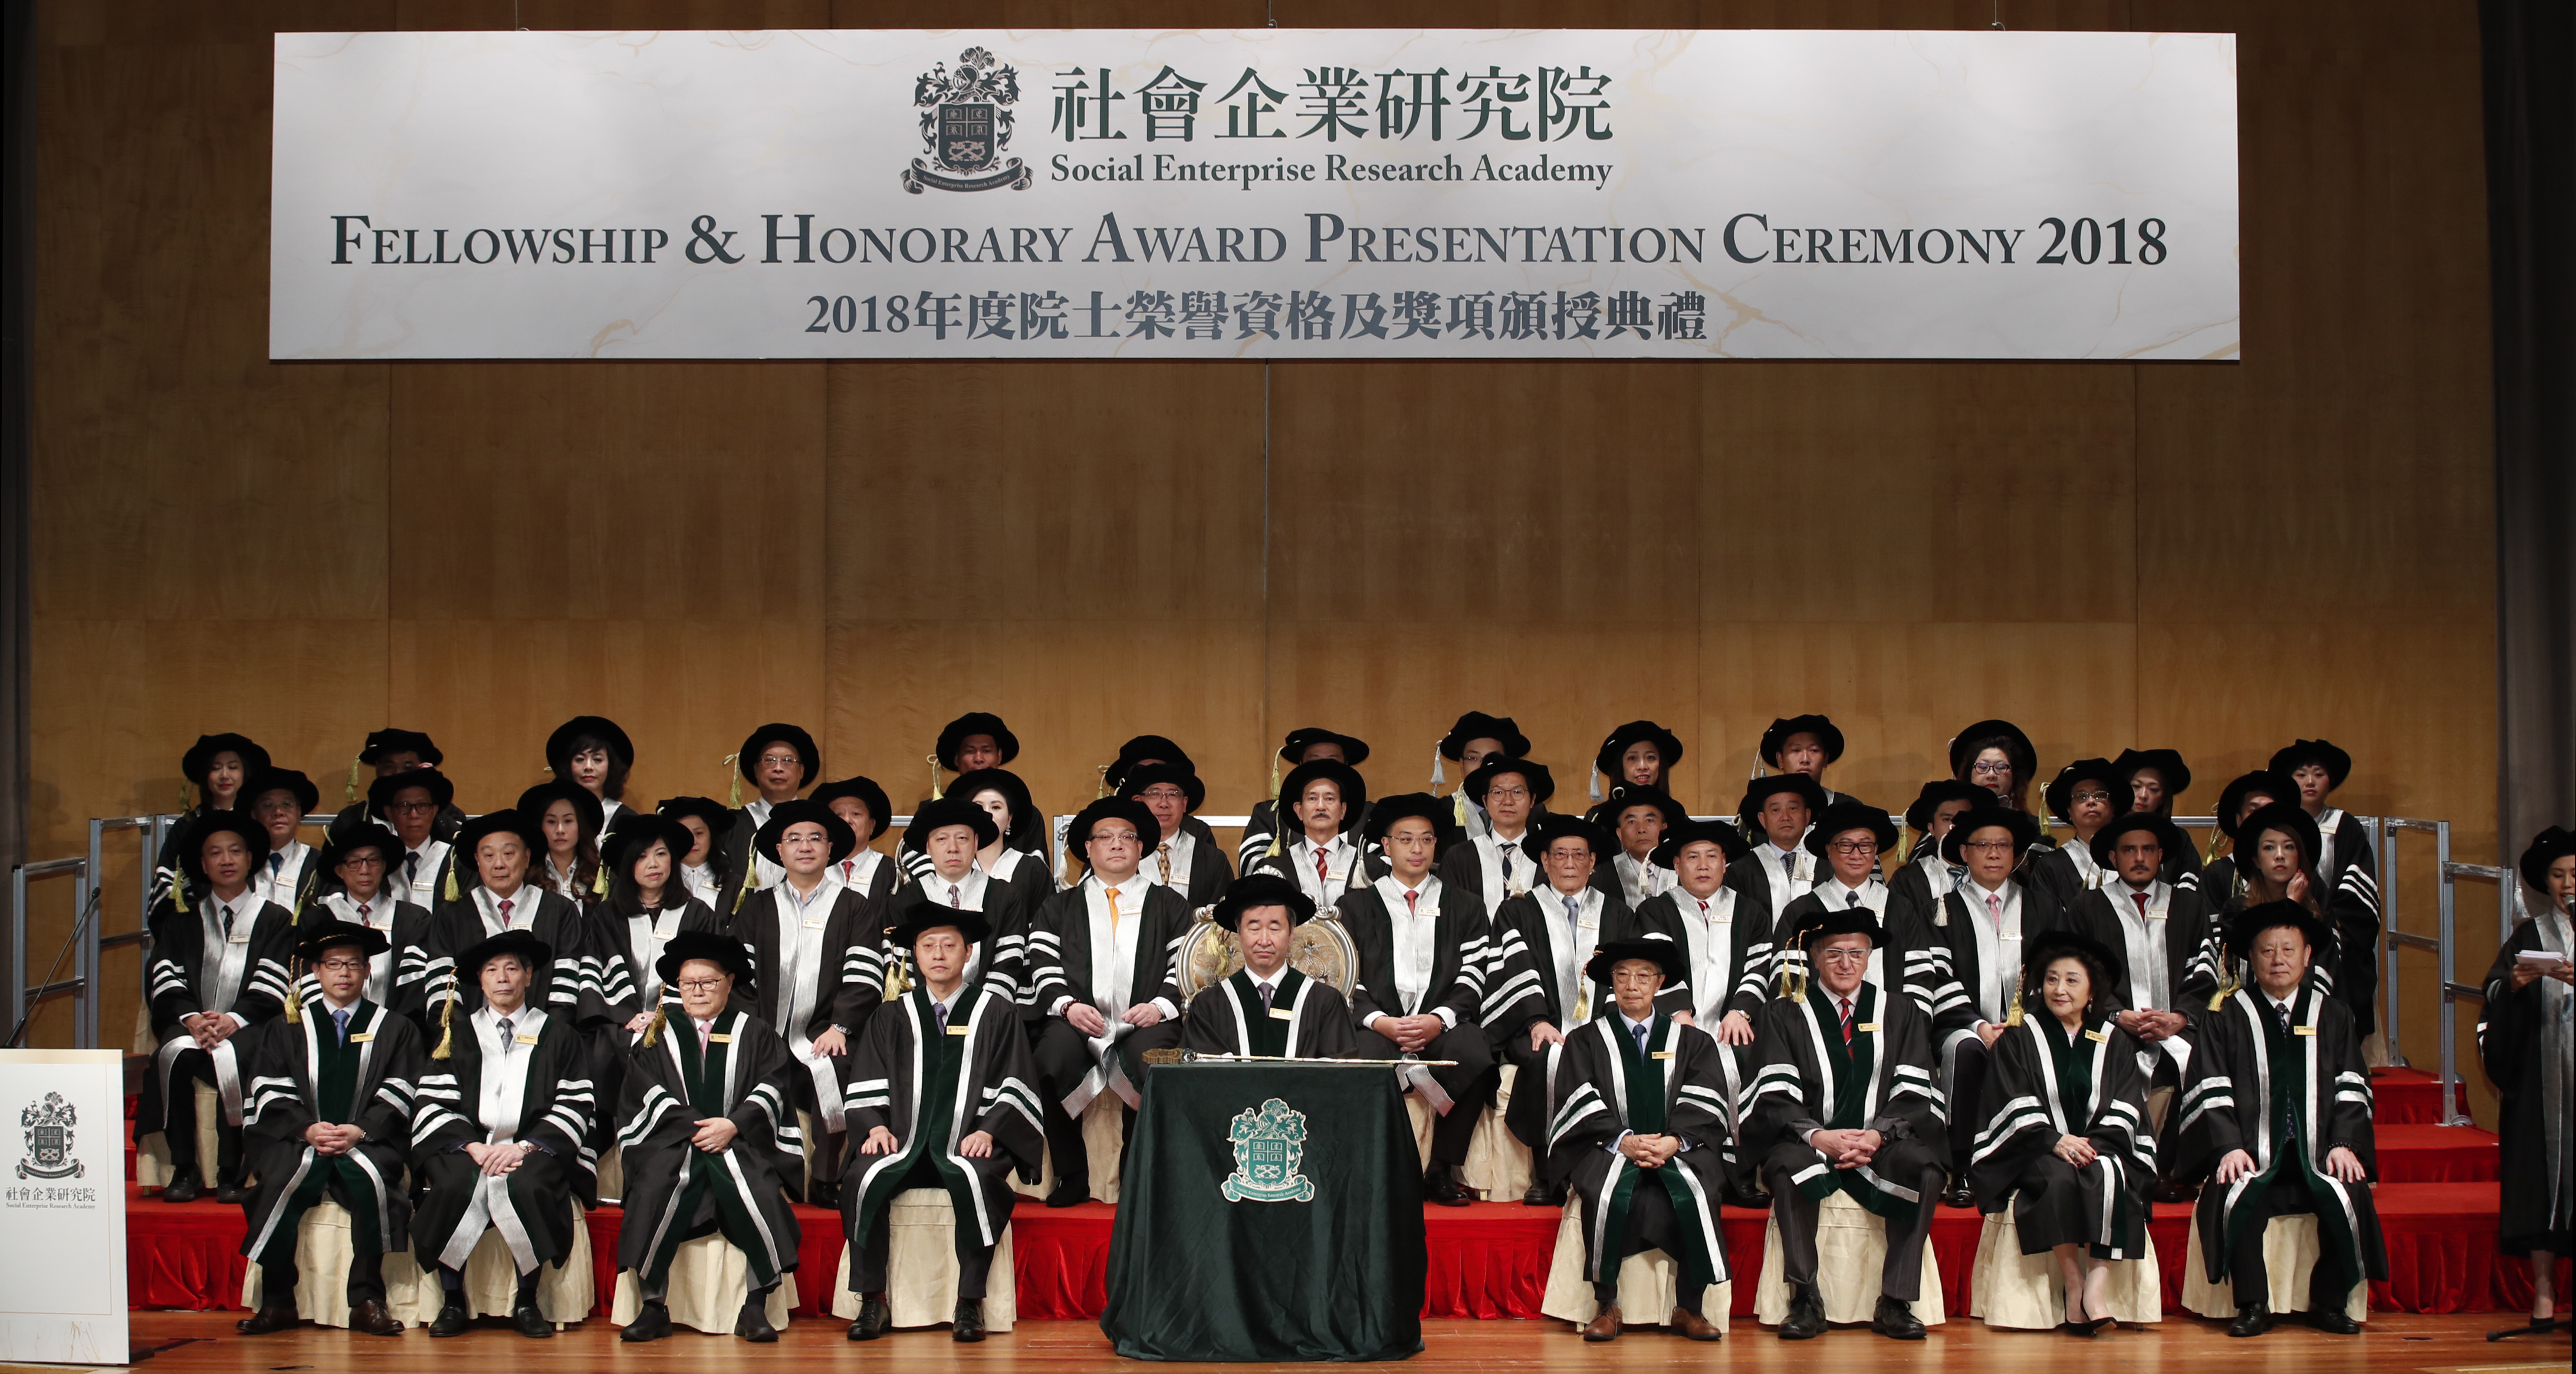 2018 Fellowship & Honorary Award Presentation Ceremony